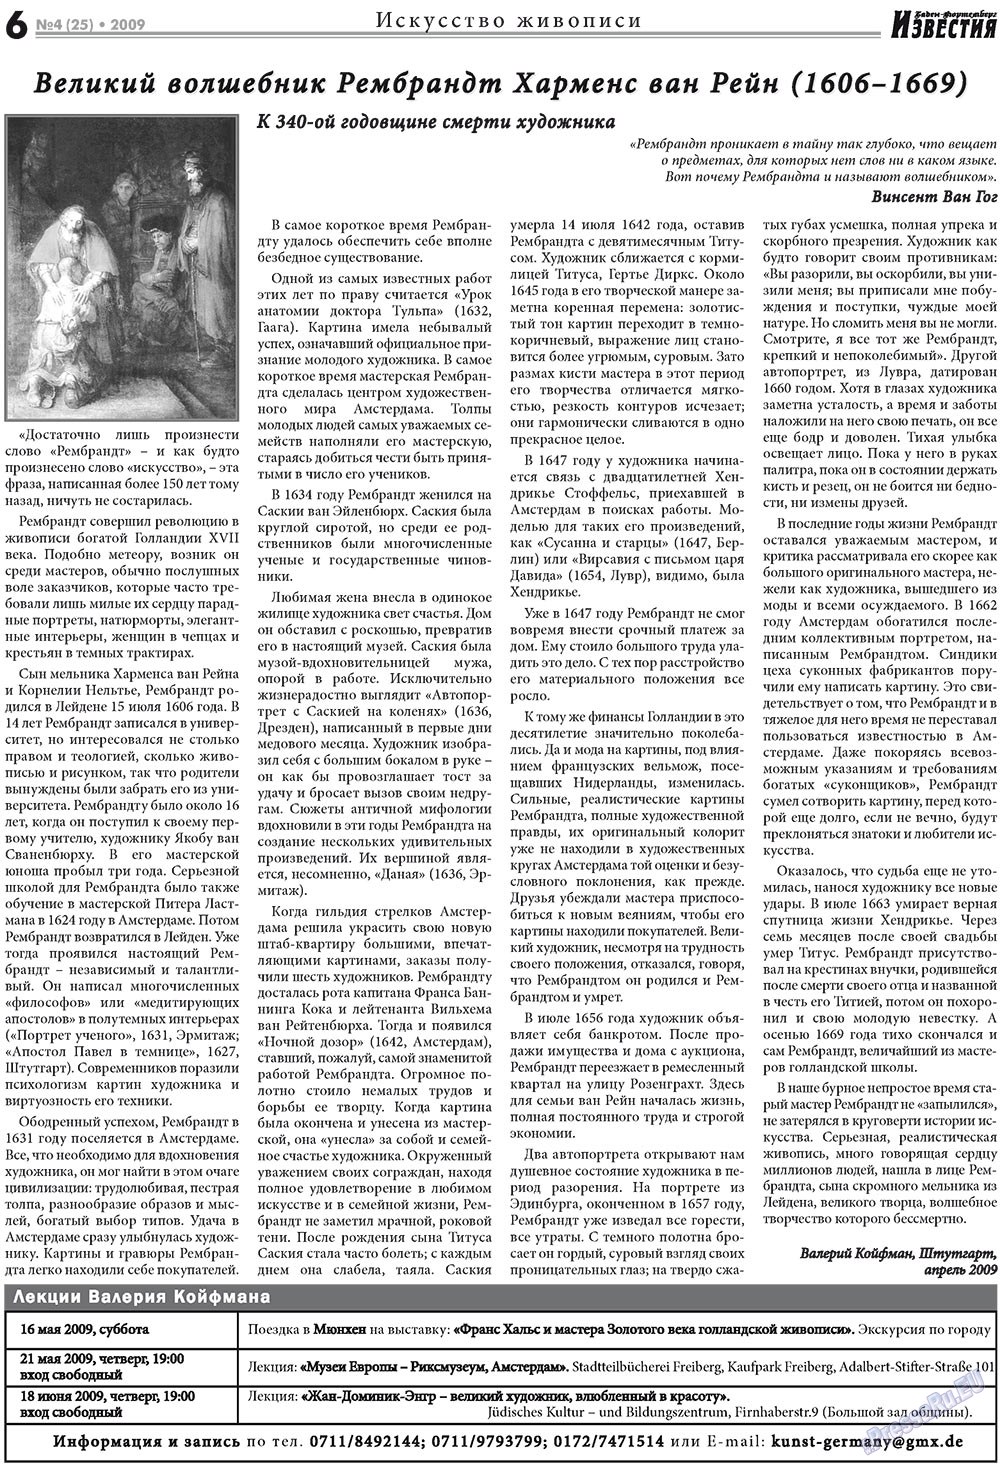 Известия BW, газета. 2009 №4 стр.6